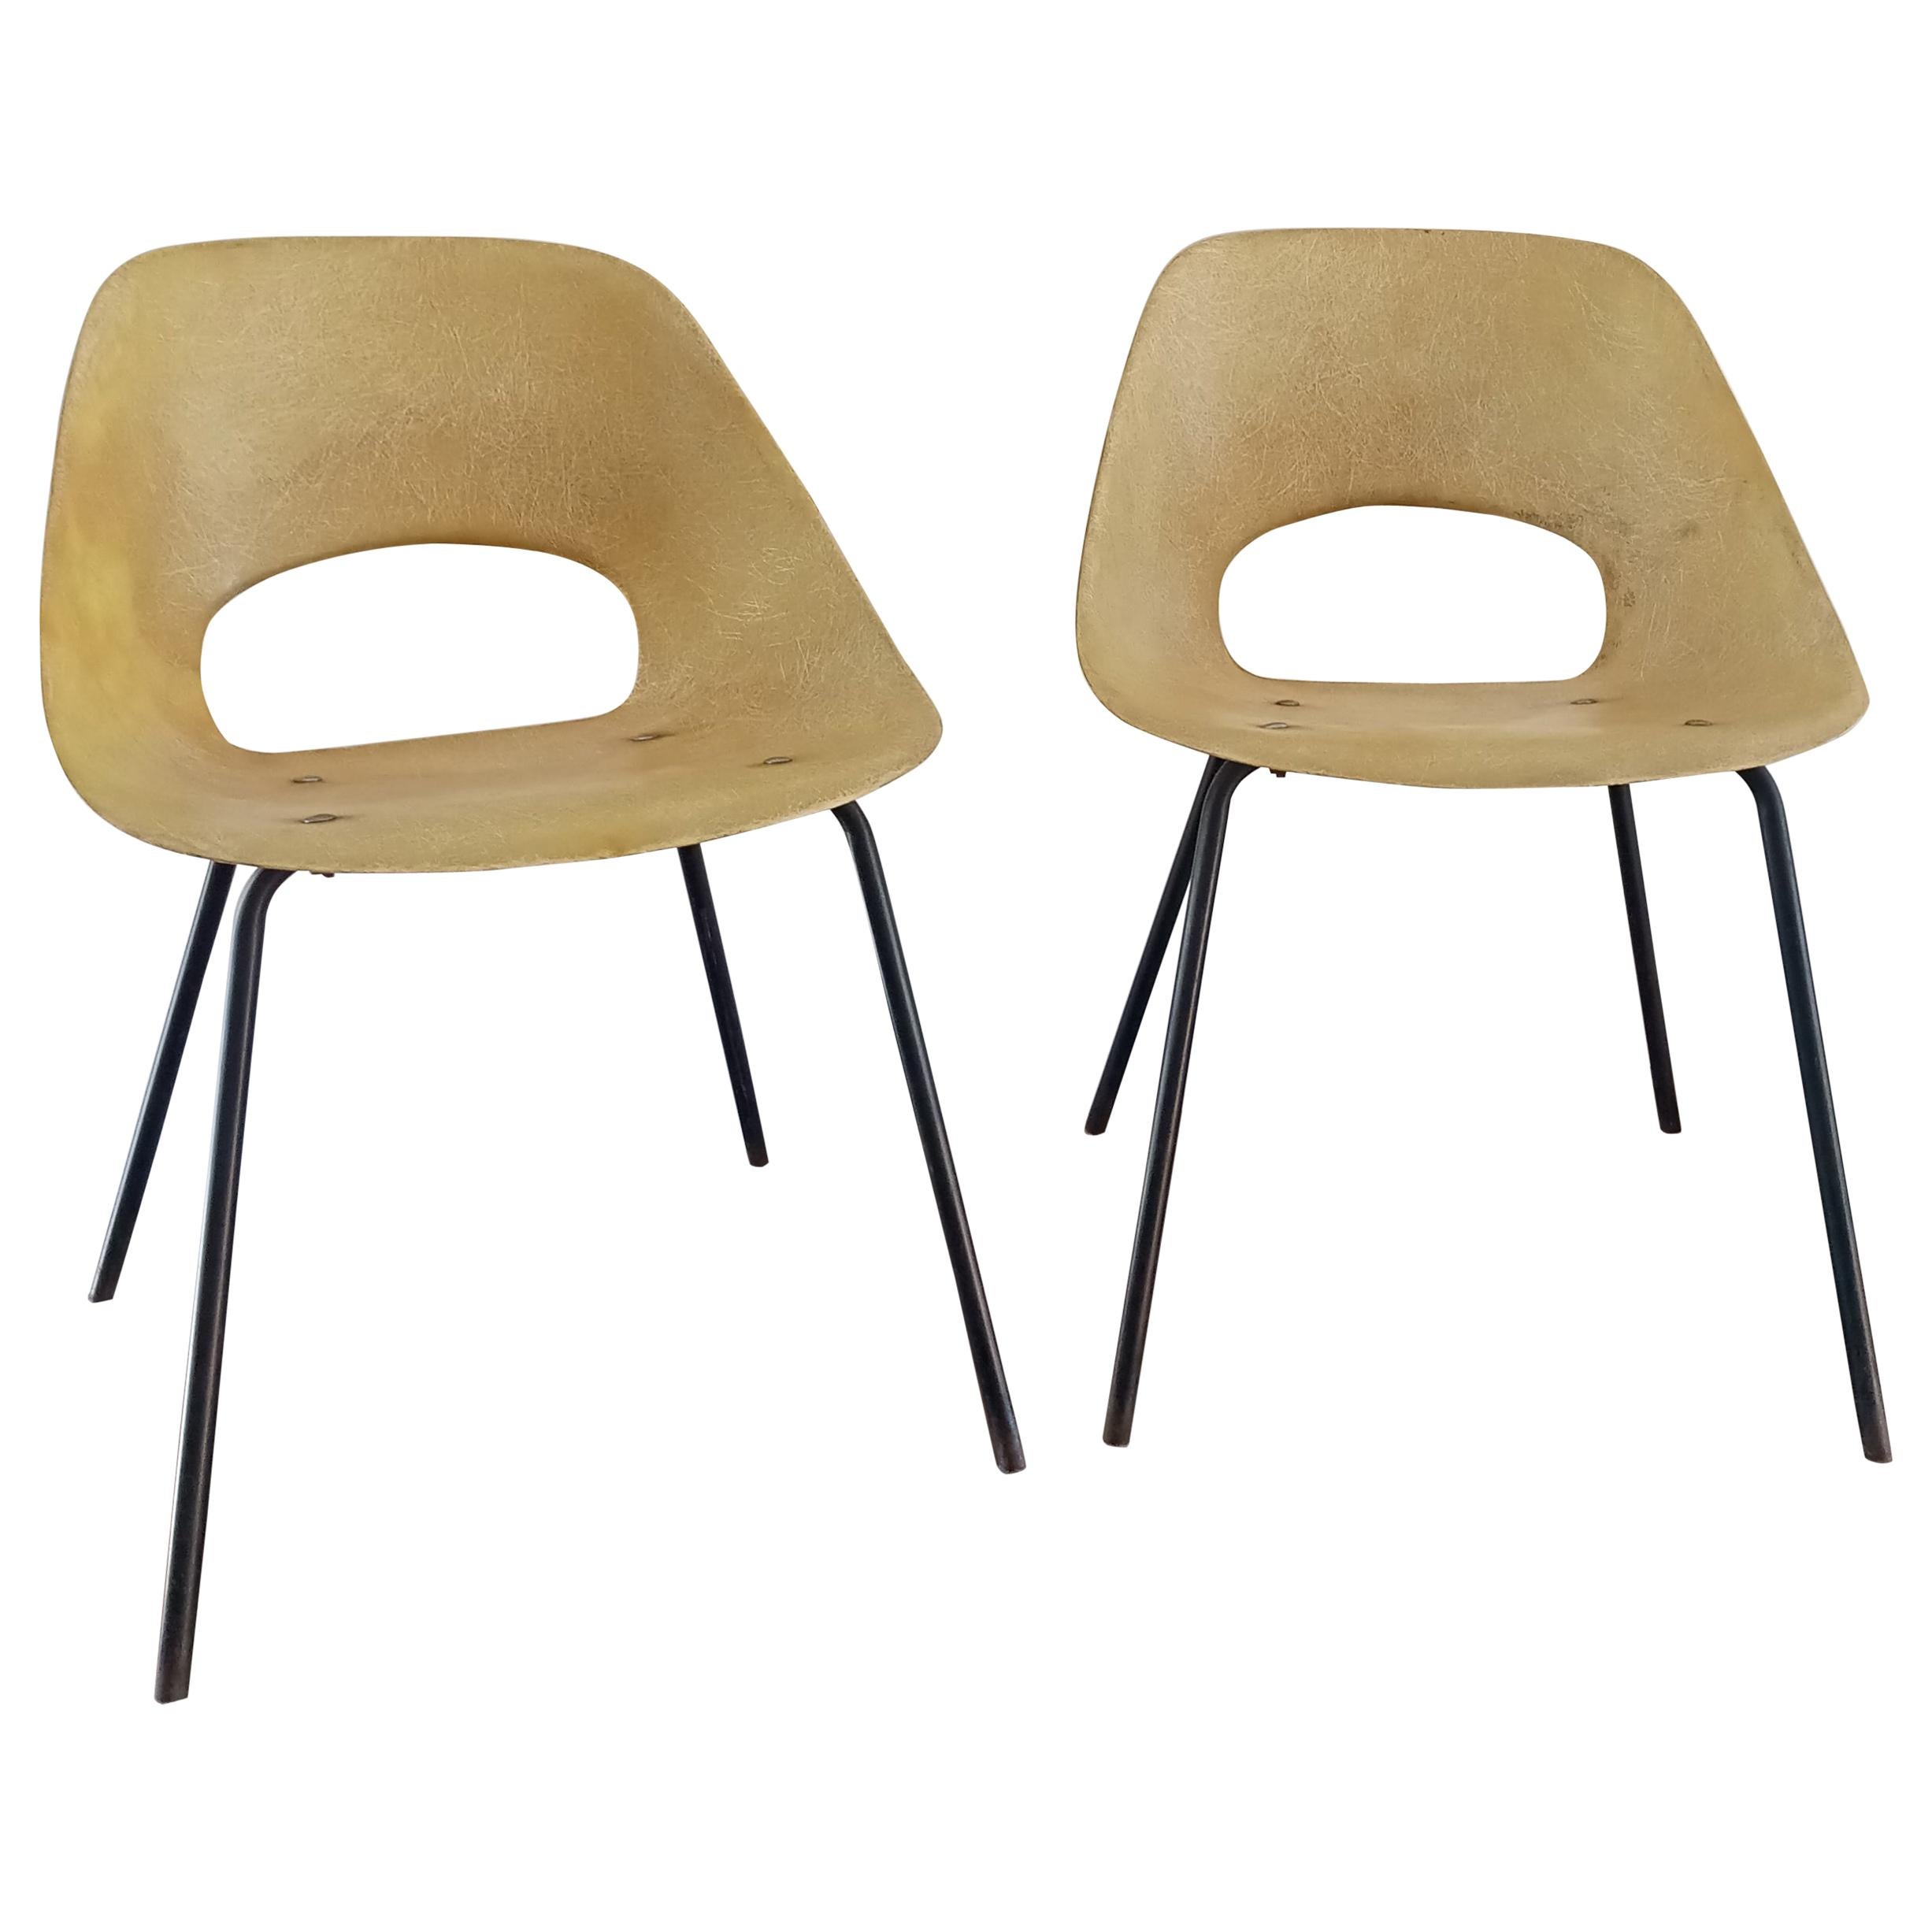 Rare Pair of "Tonneau" Fiberglass Chairs by Pierre Guariche, France, 1960s